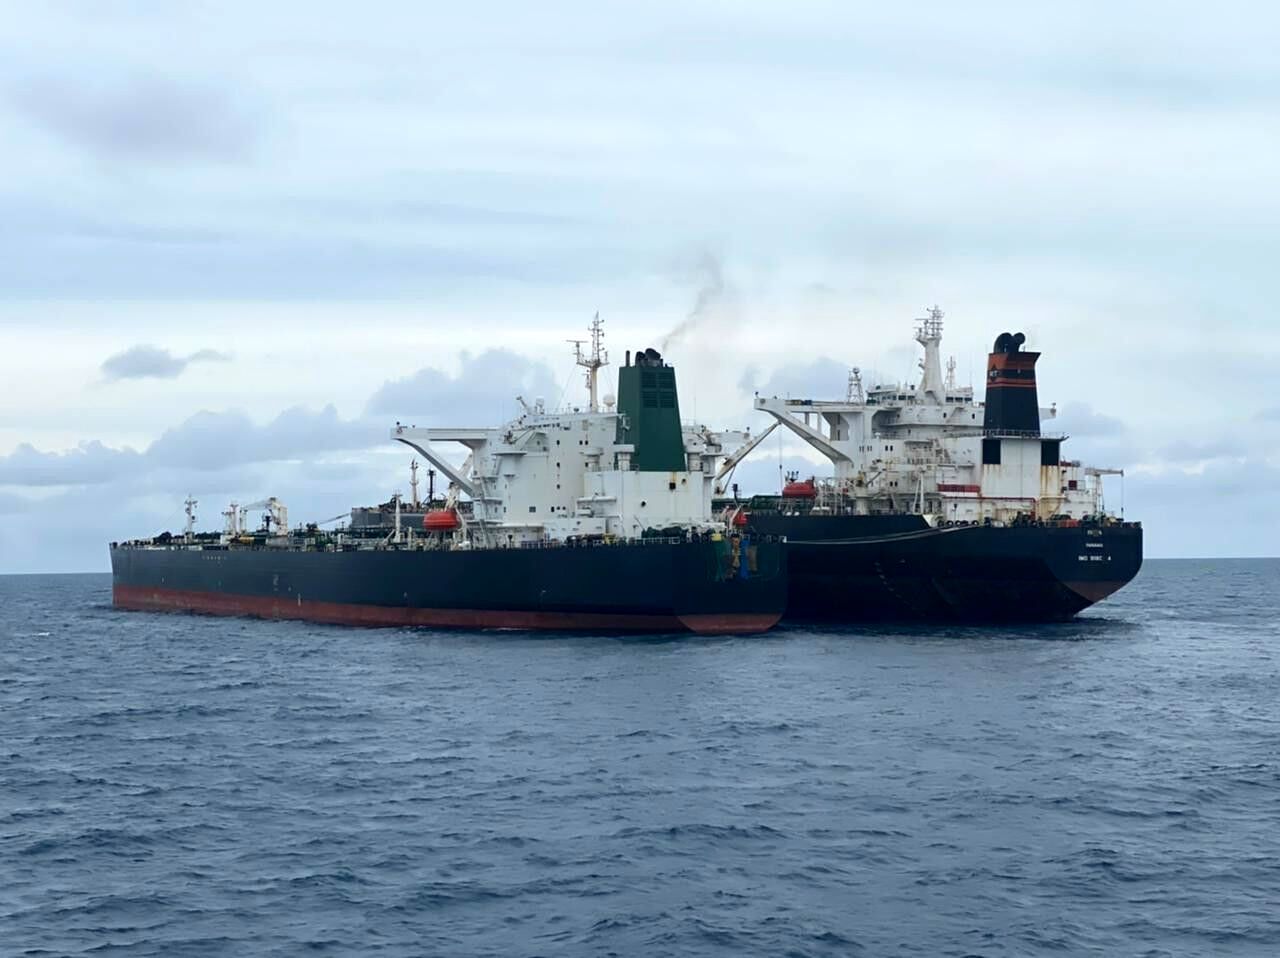 واکنش چین به توقیف نفتکش ایران توسط اندونزی